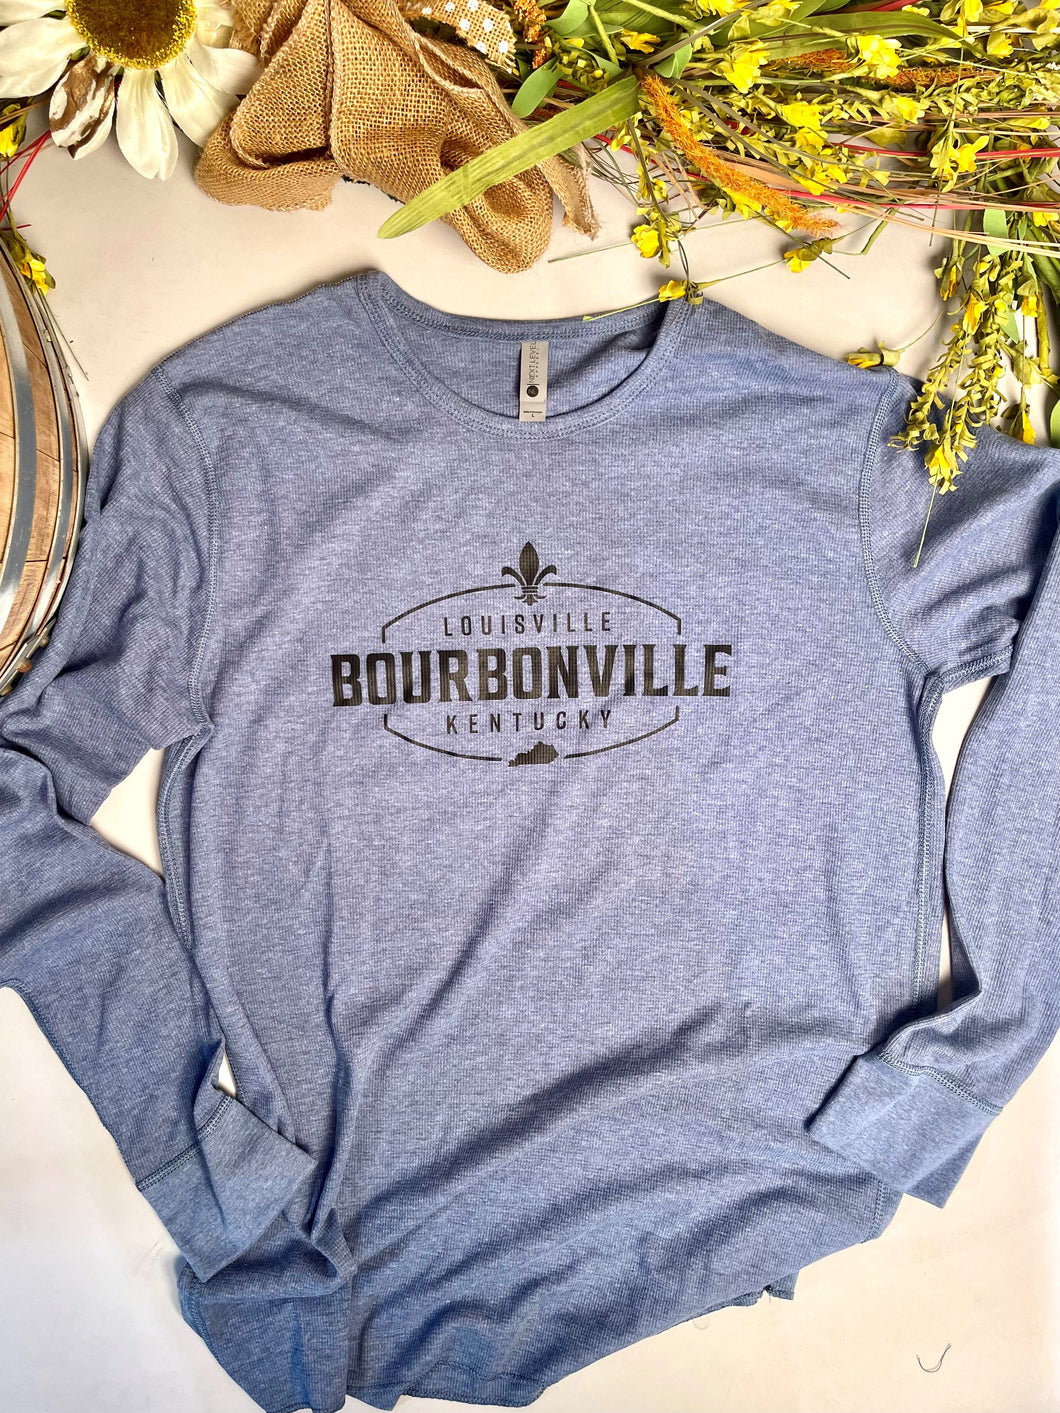 Bourbonville® Long Sleeve Thermal Shirt Unisex - Denim